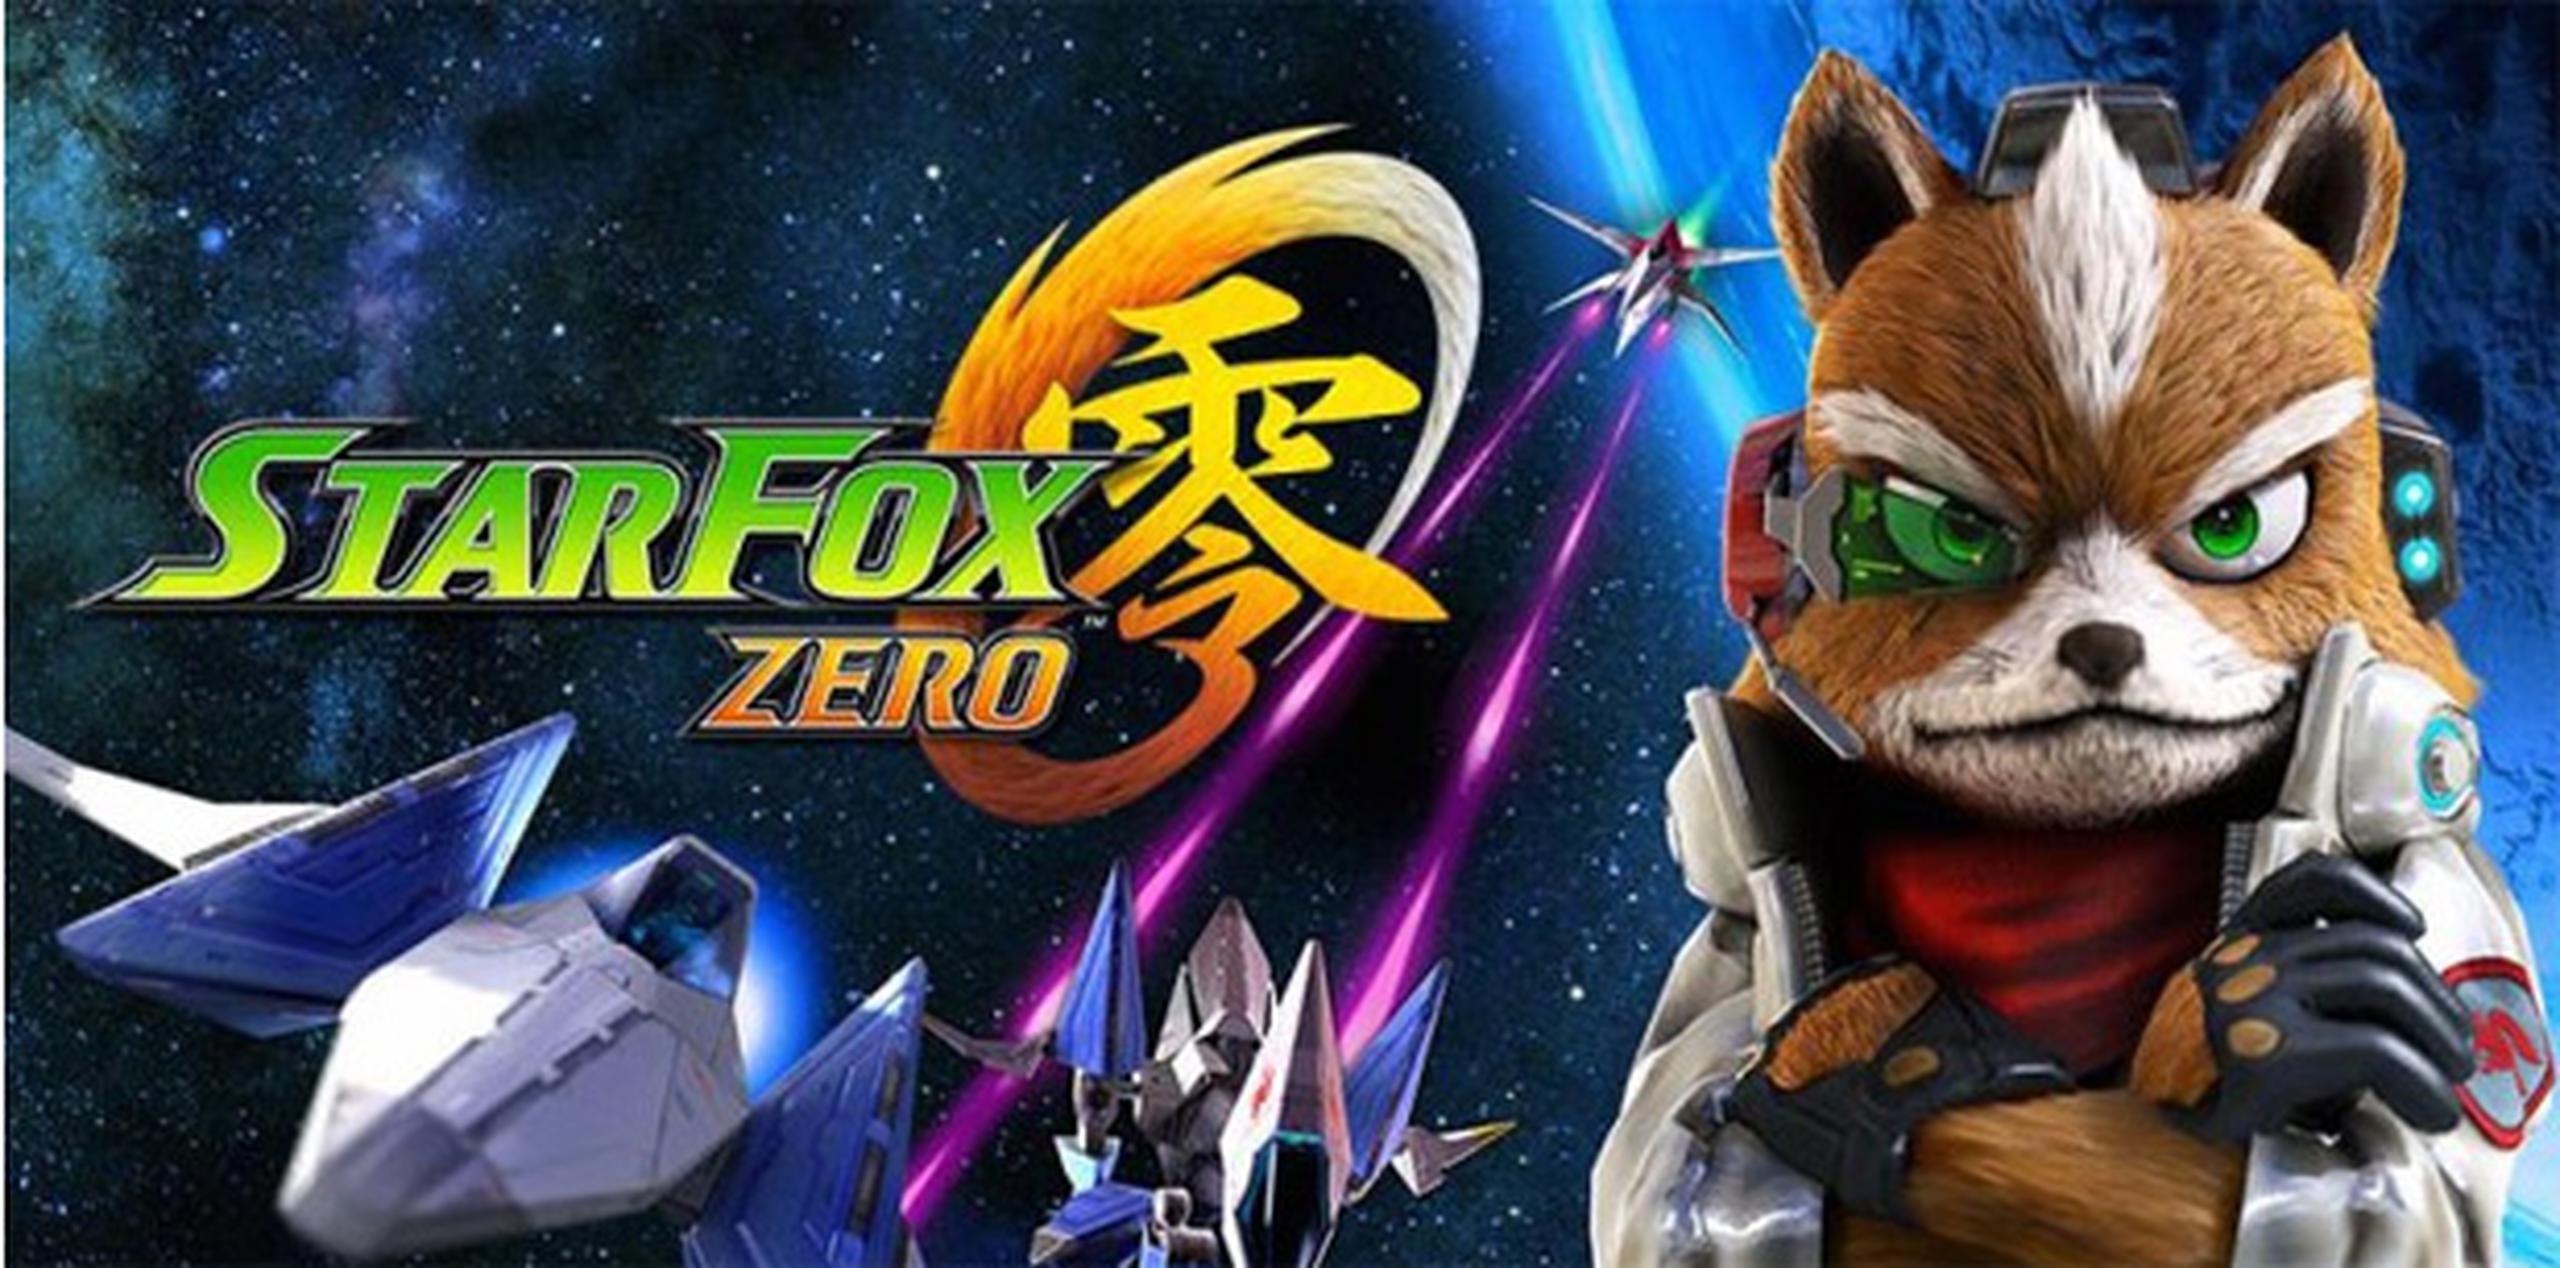 Star Fox Zero saldrá a la venta para la temporada navideña.